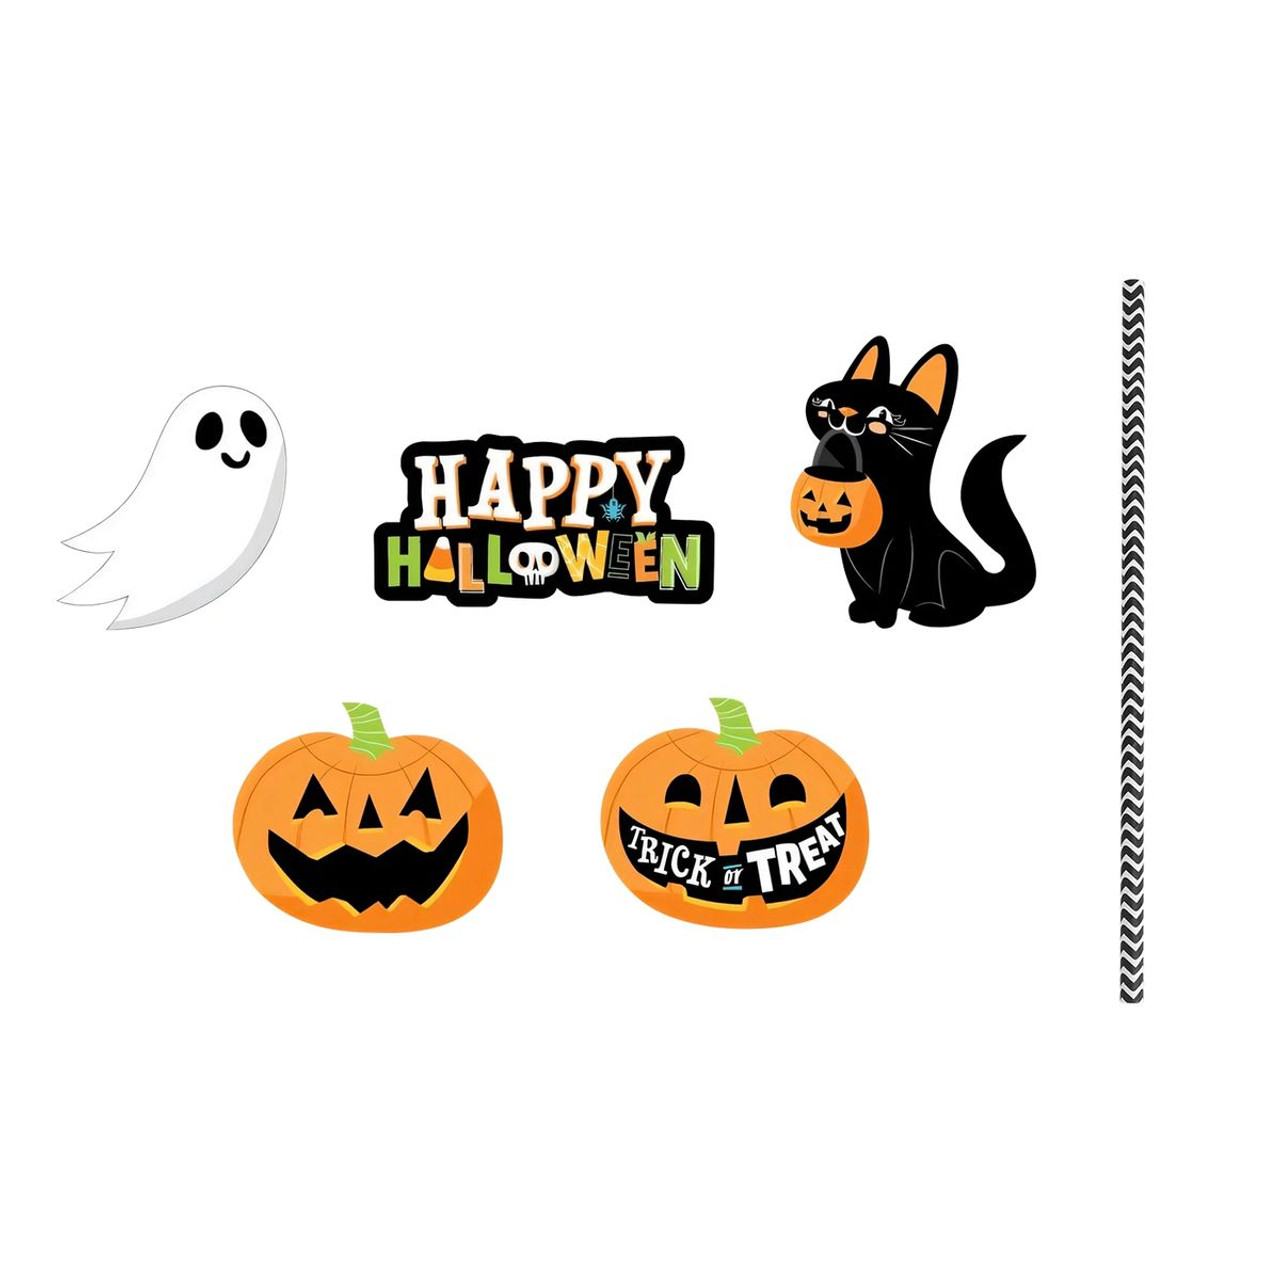 iMounTEK® Halloween Straws, 25 ct. product image